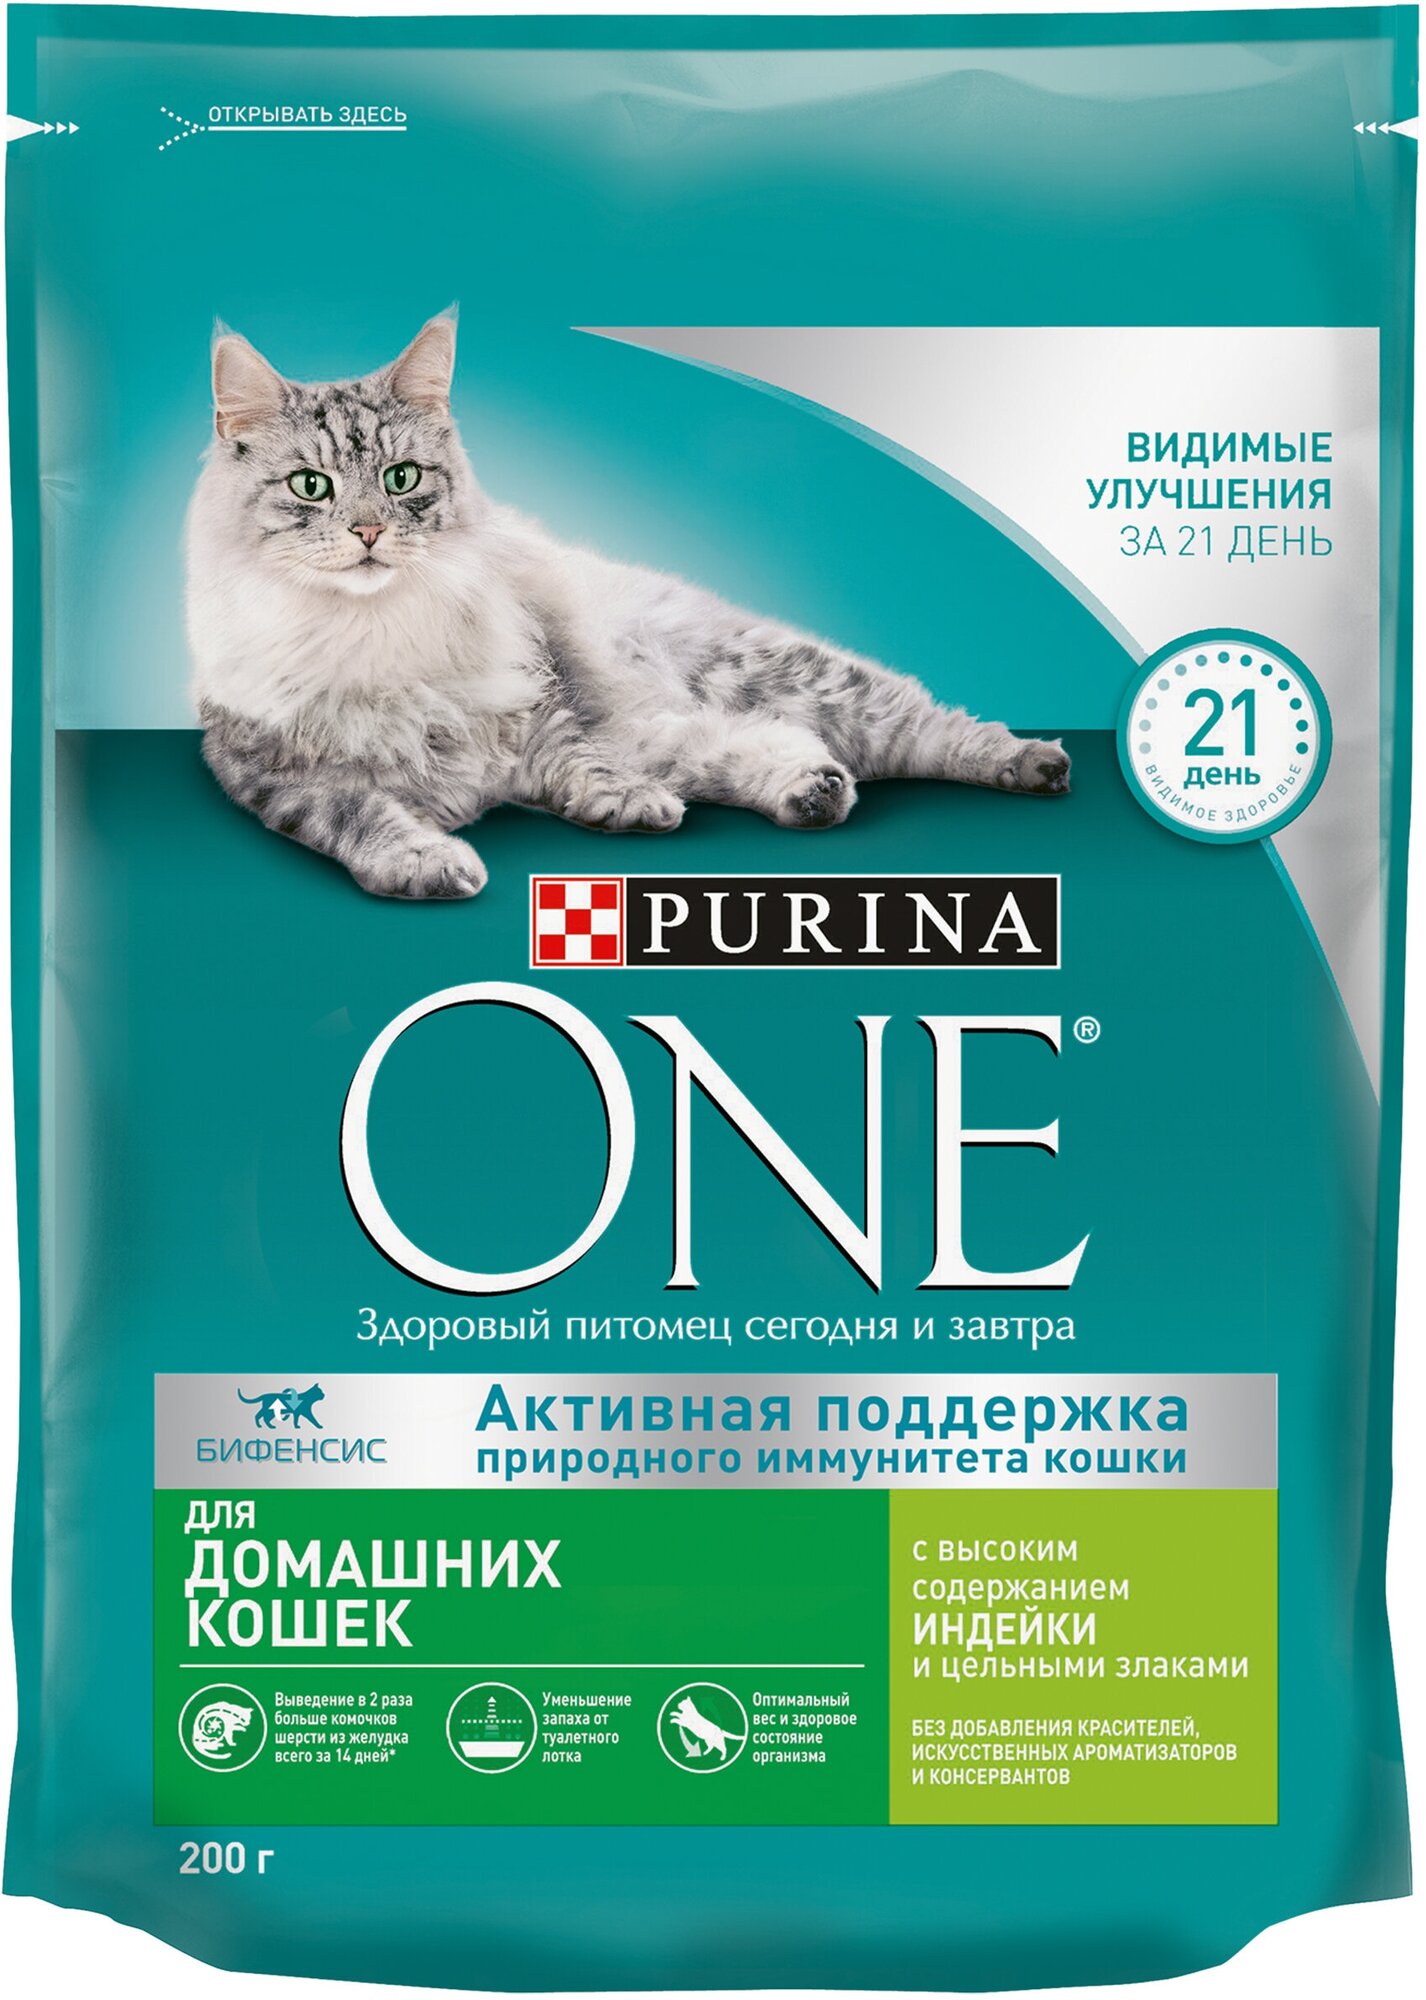 Сухой корм Purina ONE для взрослых кошек, живущих в домашних условиях, с высоким содержанием индейки и цельными злаками, 200 г